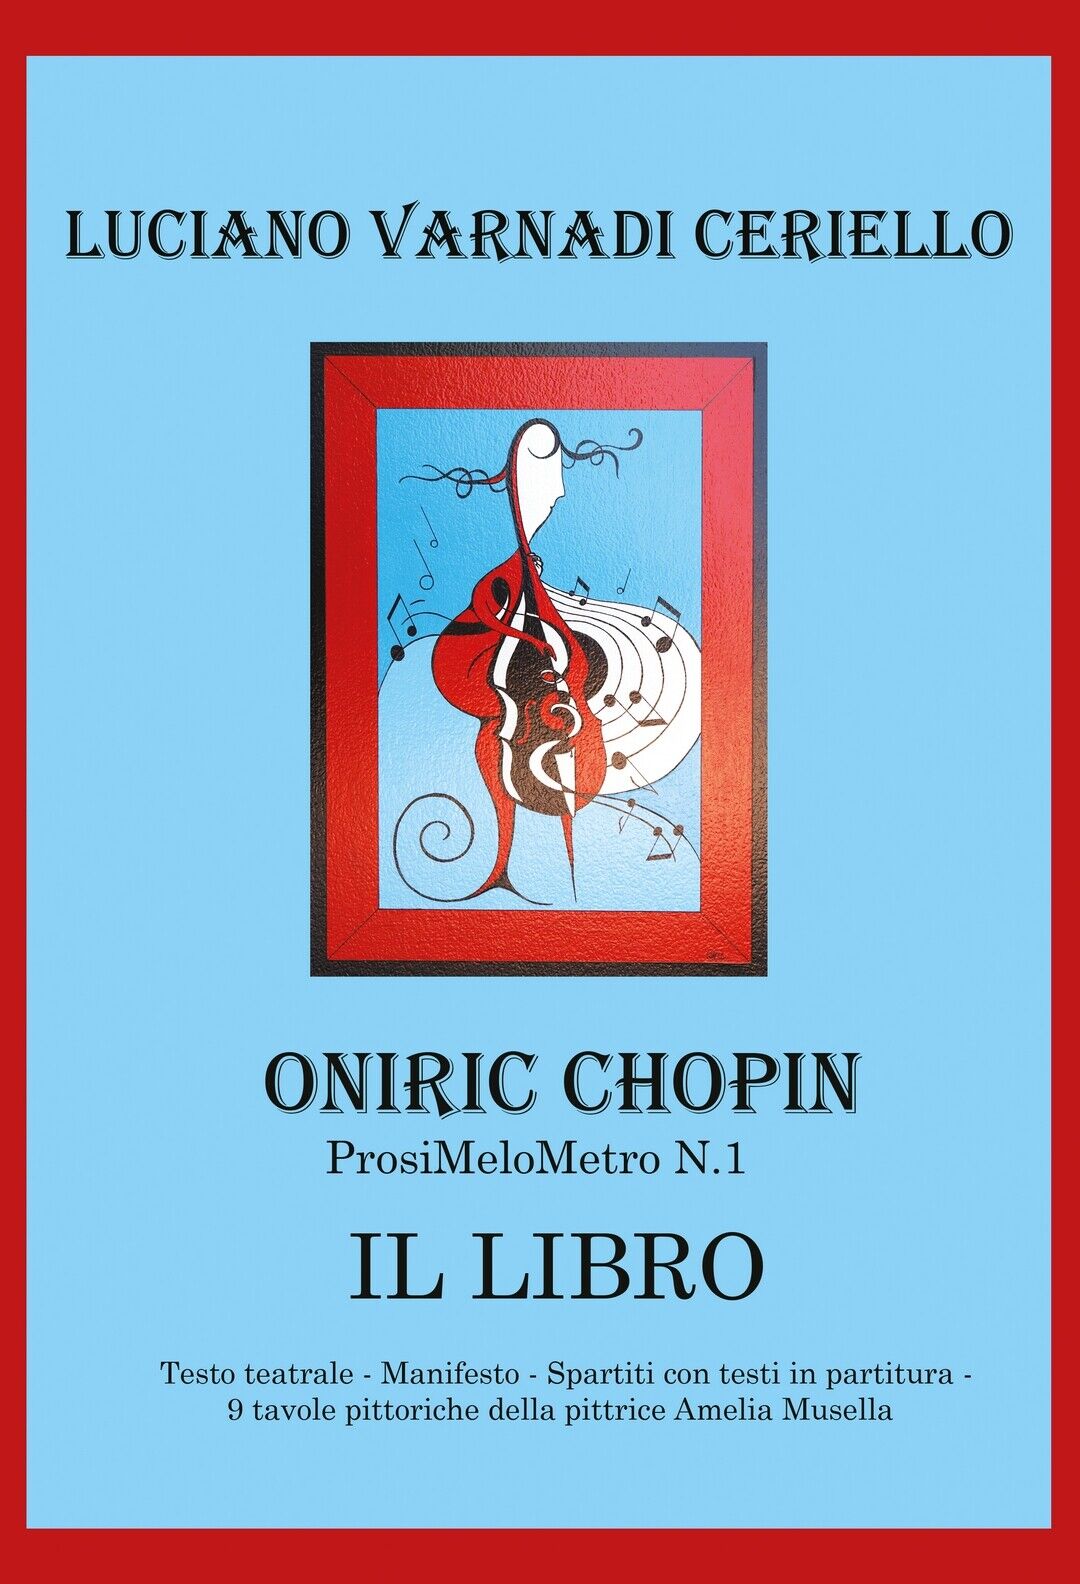 Oniric Chopin, il libro  di Luciano Ceriello,  2020,  Youcanprint